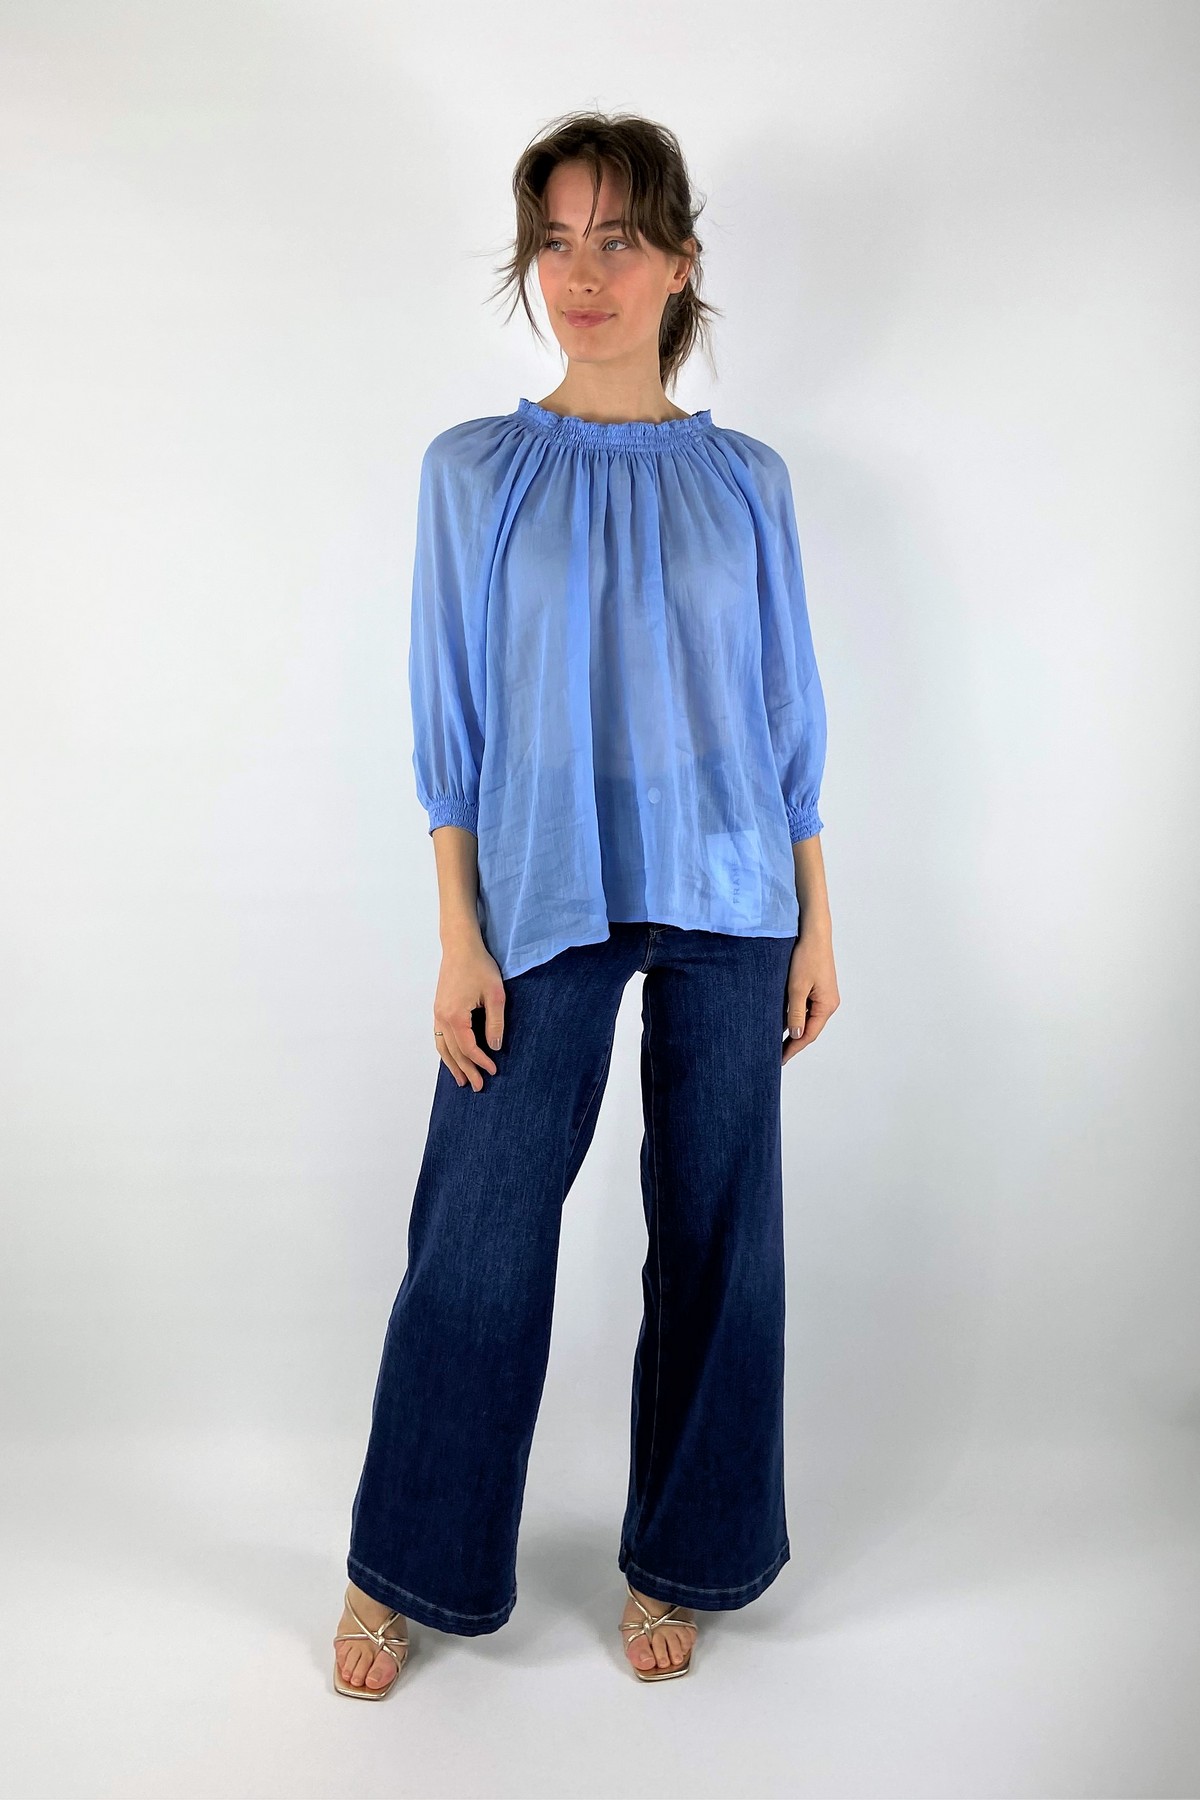 Shirtbloes 100% linnen in de kleur hemelsblauw van het merk Antonelli Firenze